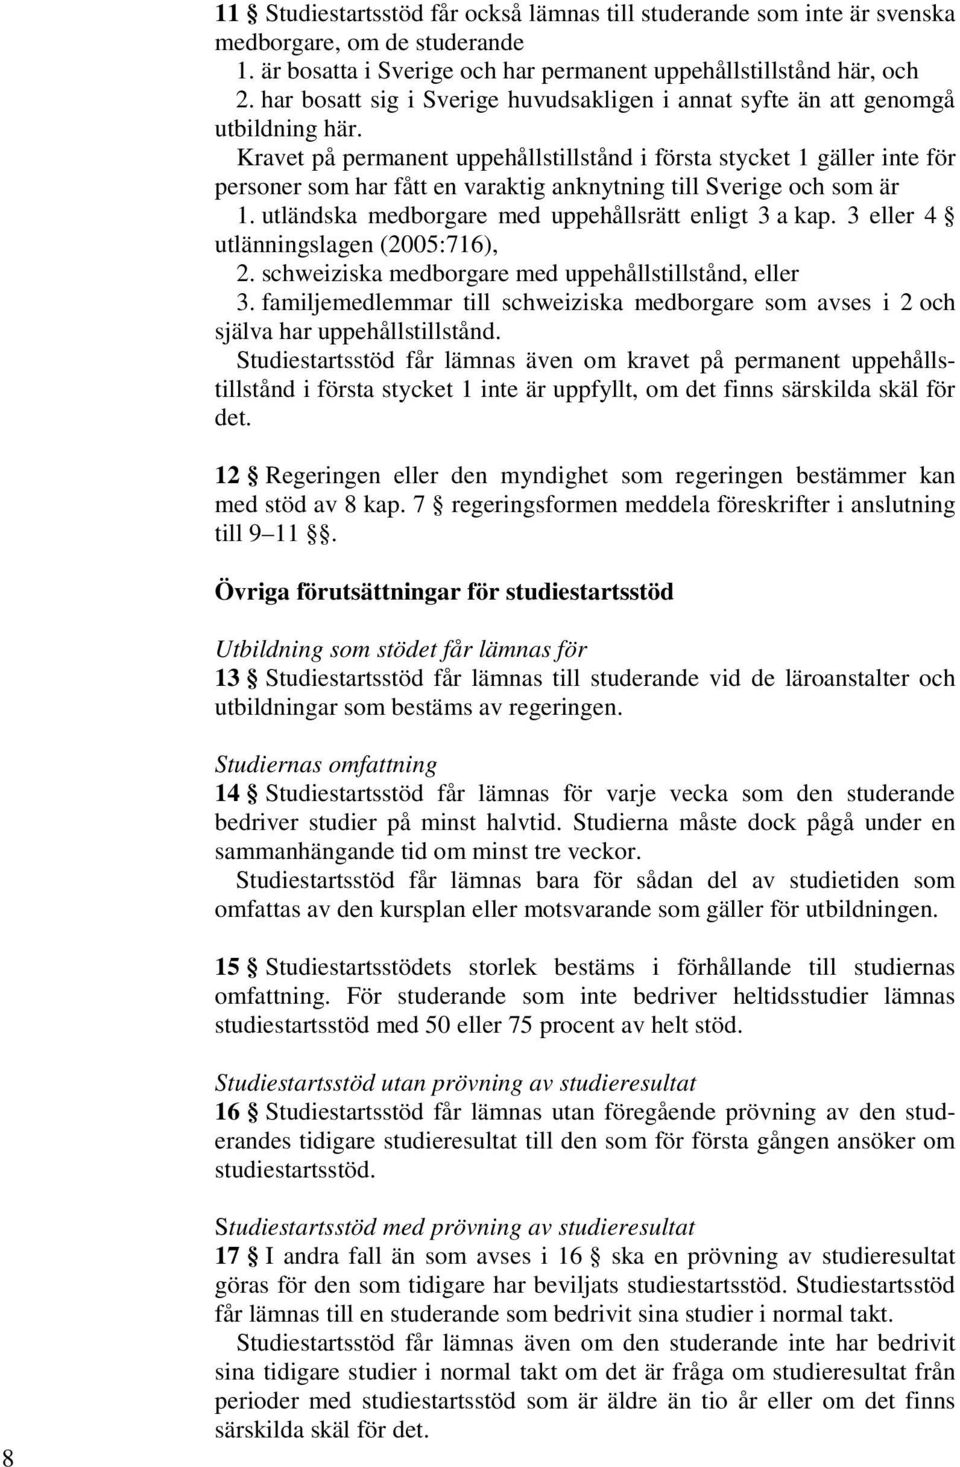 Kravet på permanent uppehållstillstånd i första stycket 1 gäller inte för personer som har fått en varaktig anknytning till Sverige och som är 1. utländska medborgare med uppehållsrätt enligt 3 a kap.